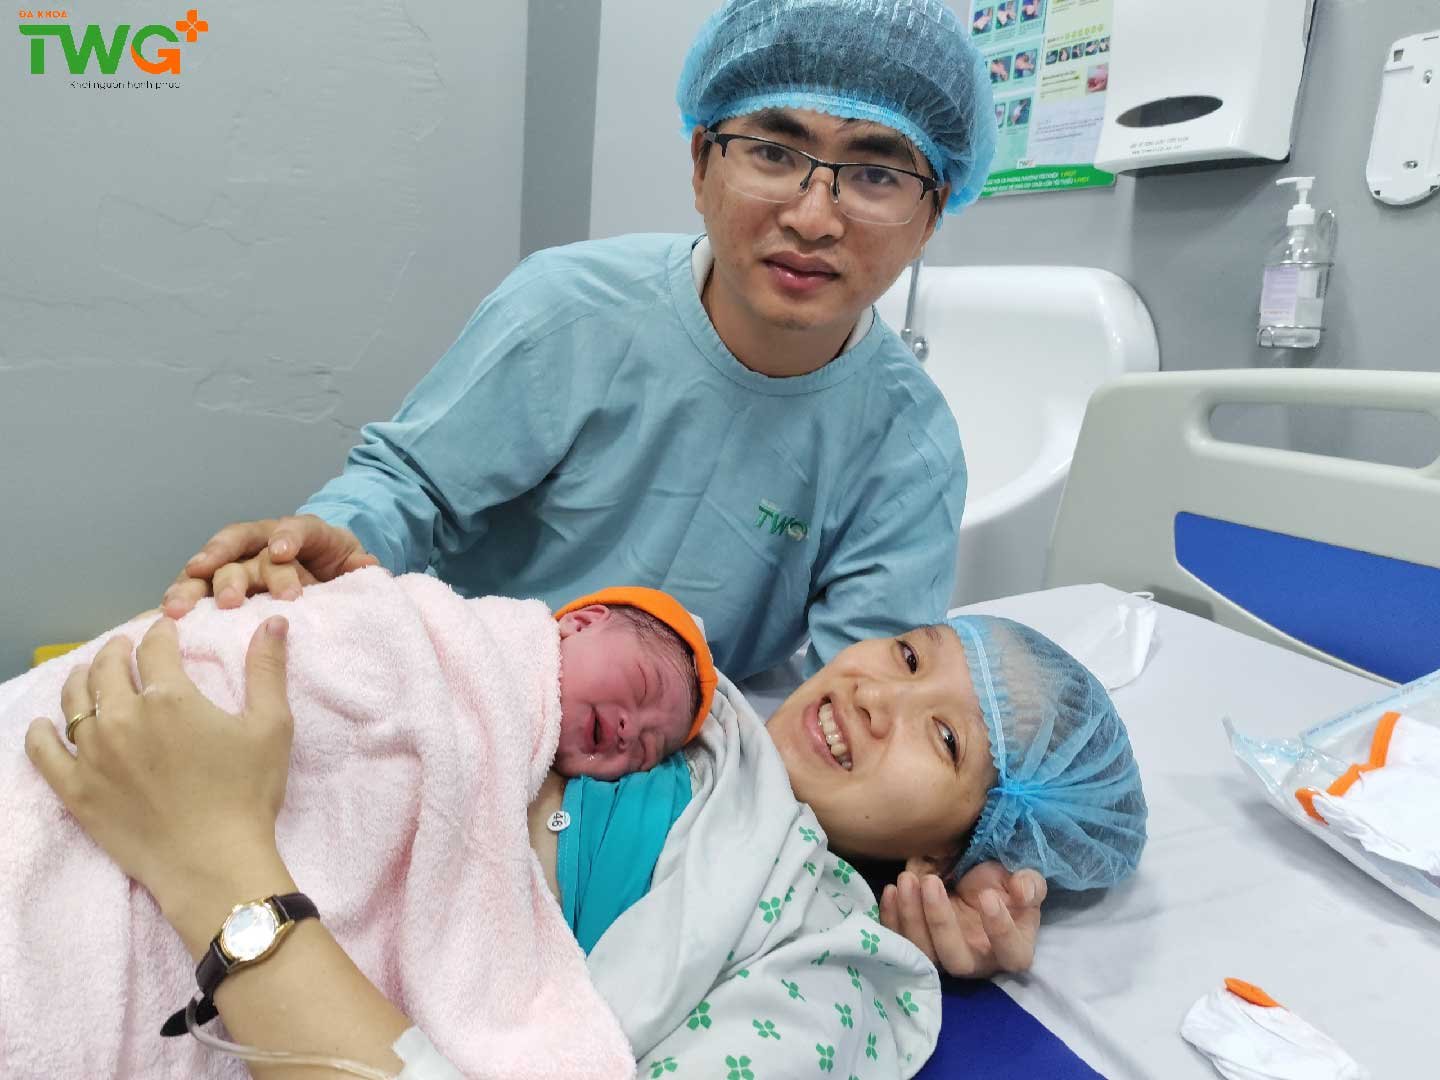 [GÓC CHIA SẺ] Bệnh viện TWG Long An hỗ trợ thành công ca sinh lần thứ 2 bằng phương pháp sinh thường sau lần đầu sinh mổ